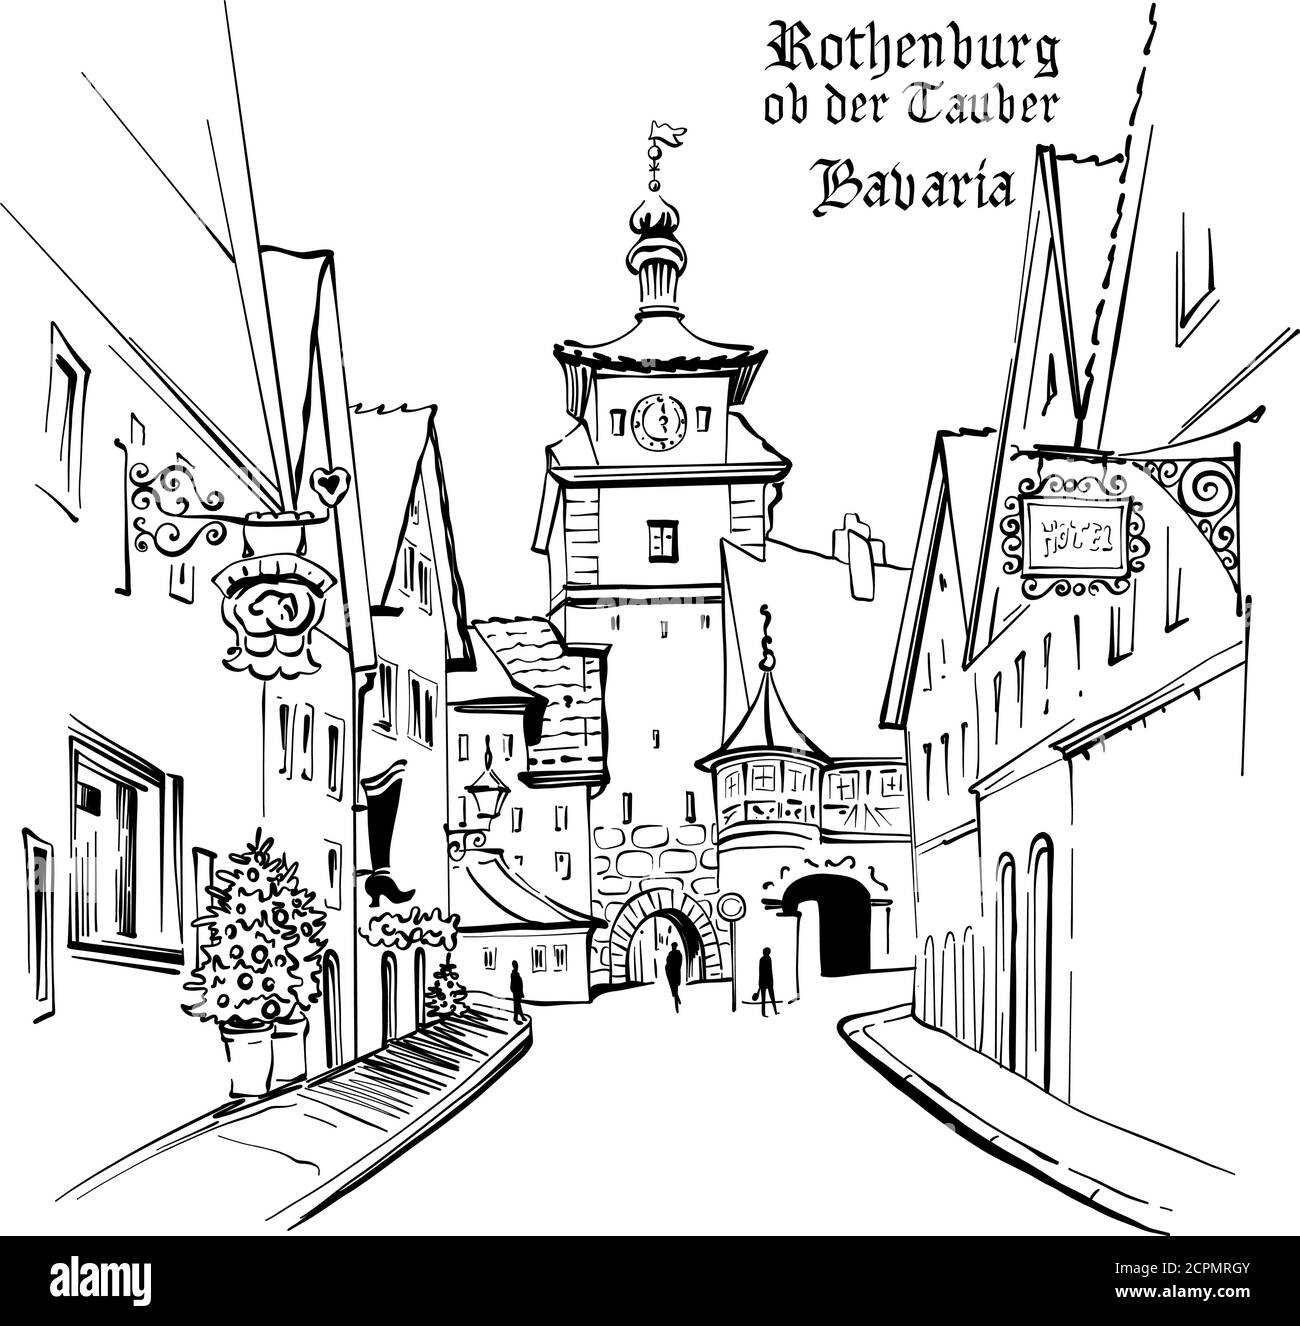 Vektor-Skizze des Weißen Turms oder Weisser Turms in der mittelalterlichen Altstadt von Rothenburg ob der Tauber, Bayern Stock Vektor